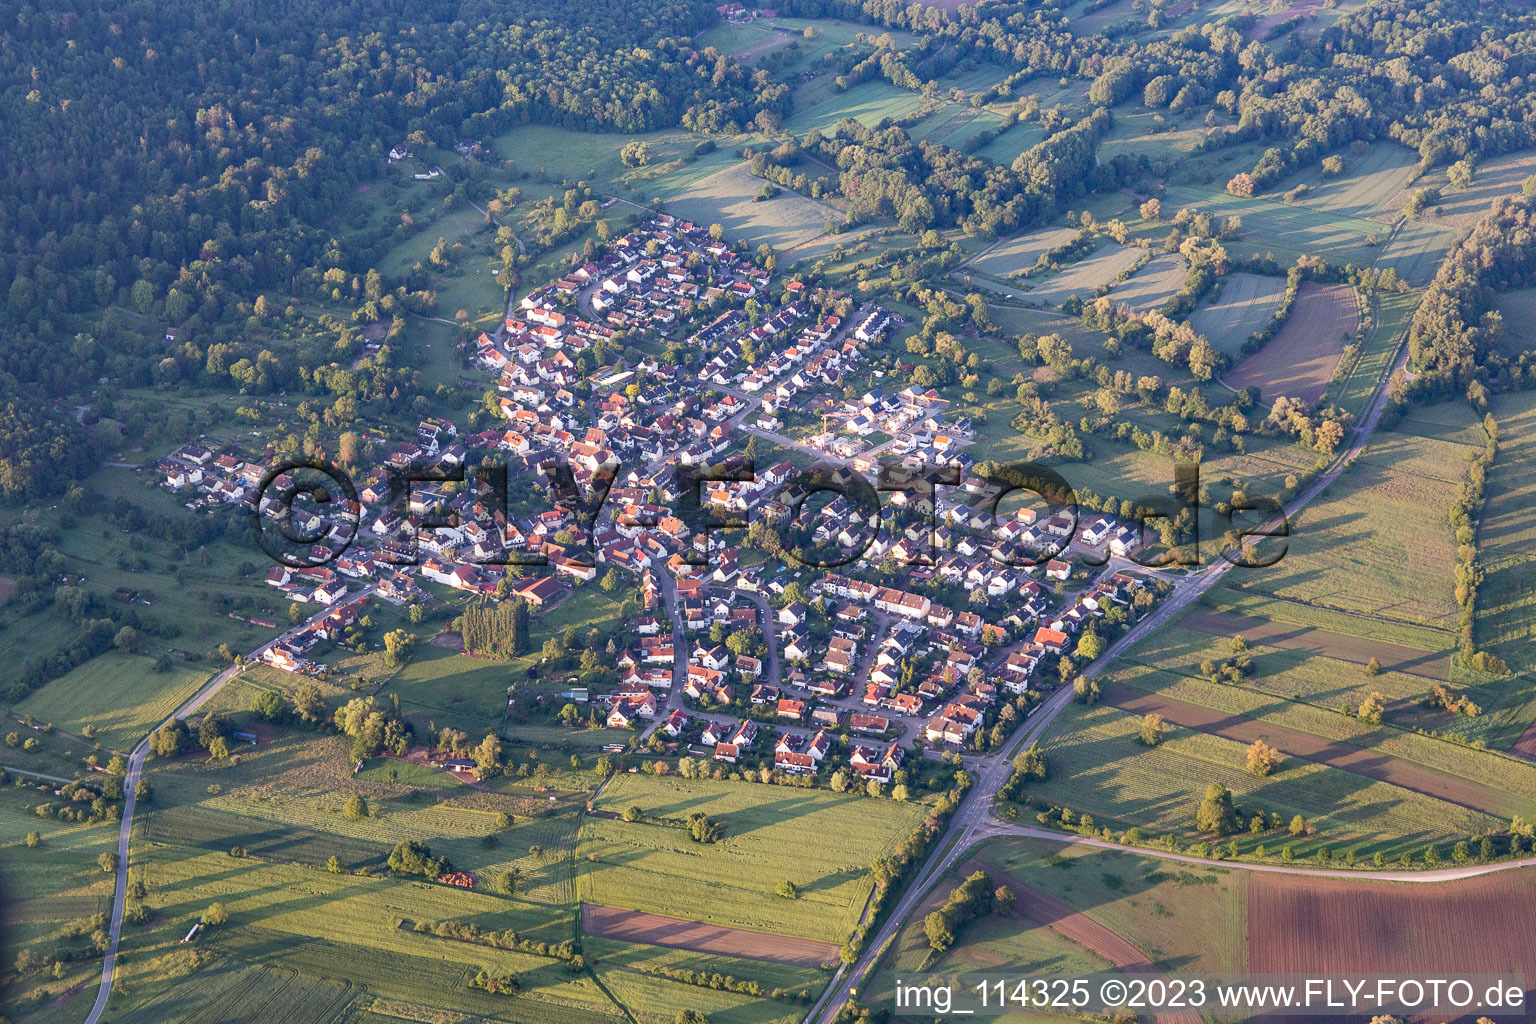 Luftbild von Ortsteil Oberweier in Ettlingen im Bundesland Baden-Württemberg, Deutschland